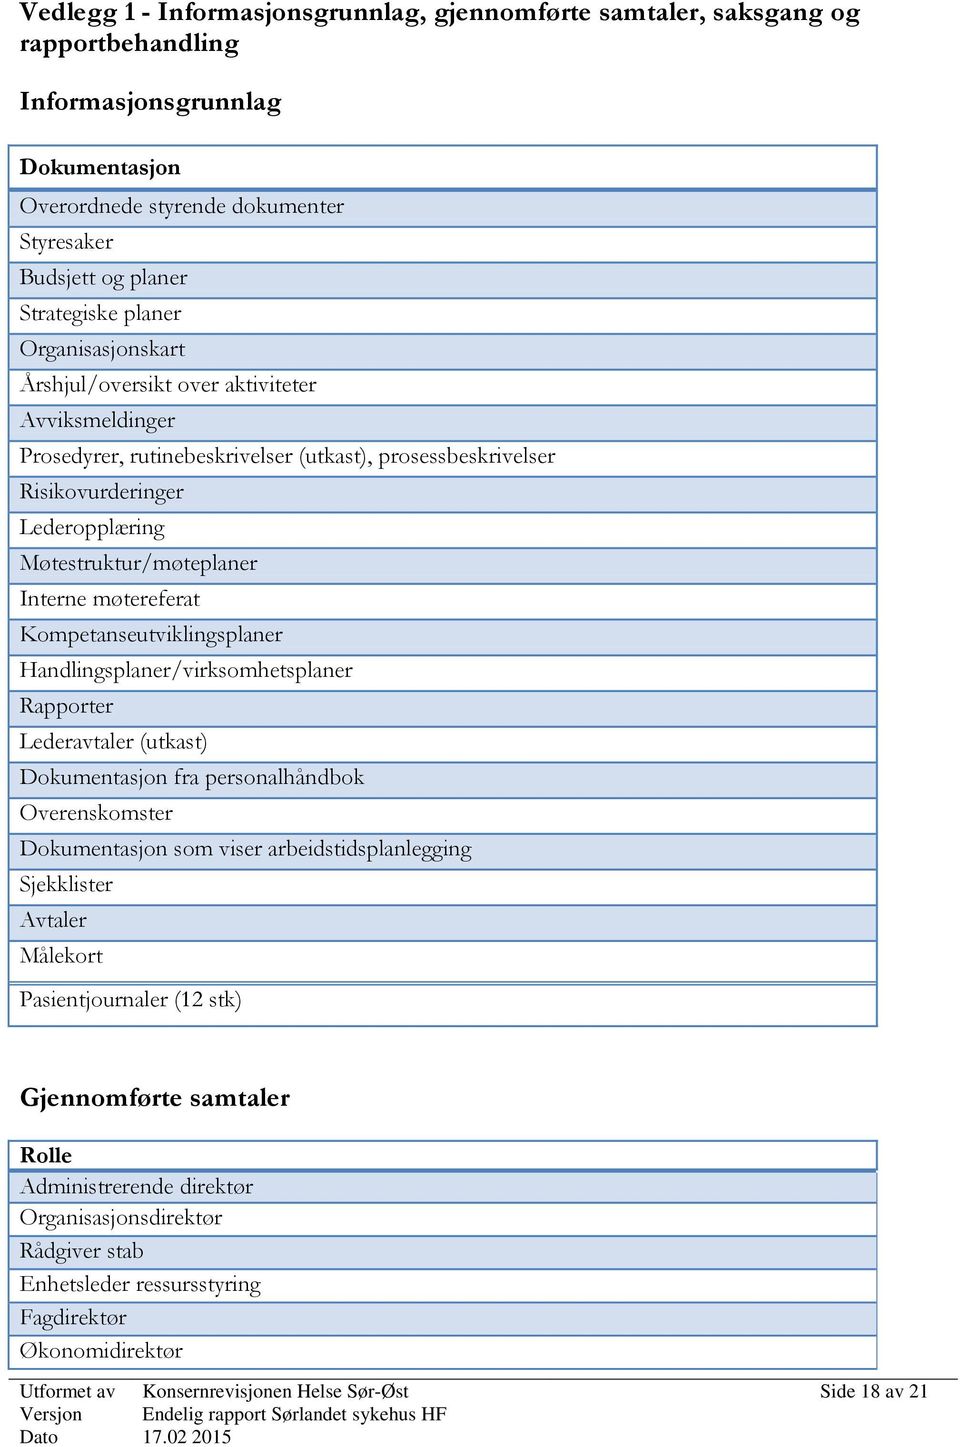 Interne møtereferat Kompetanseutviklingsplaner Handlingsplaner/virksomhetsplaner Rapporter Lederavtaler (utkast) Dokumentasjon fra personalhåndbok Overenskomster Dokumentasjon som viser